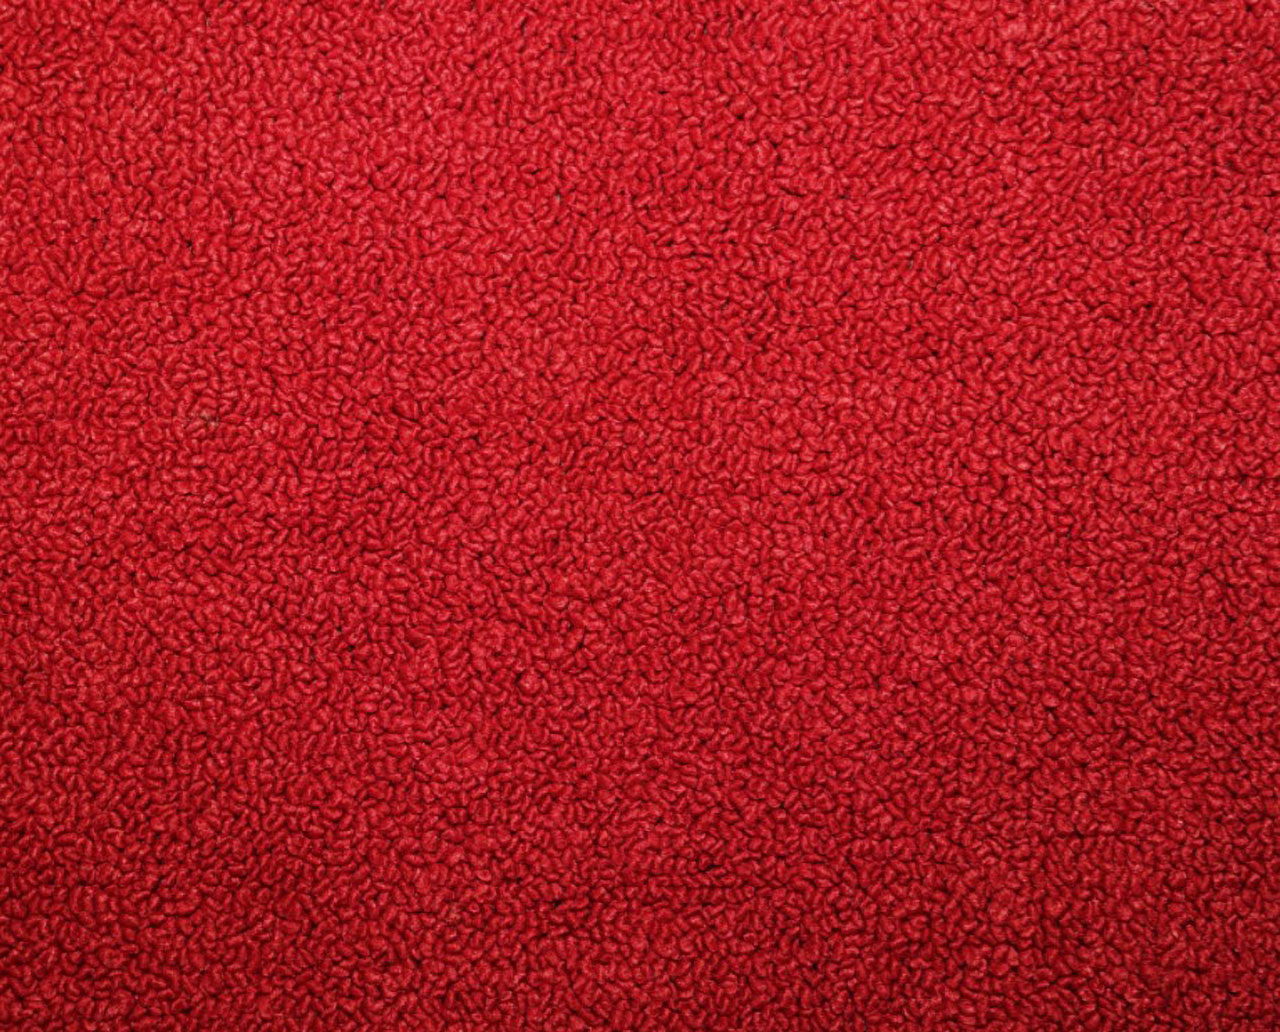 Holden Kingswood HG Kingswood Ute 12E Baroque Red Carpet (Image 1 of 1)